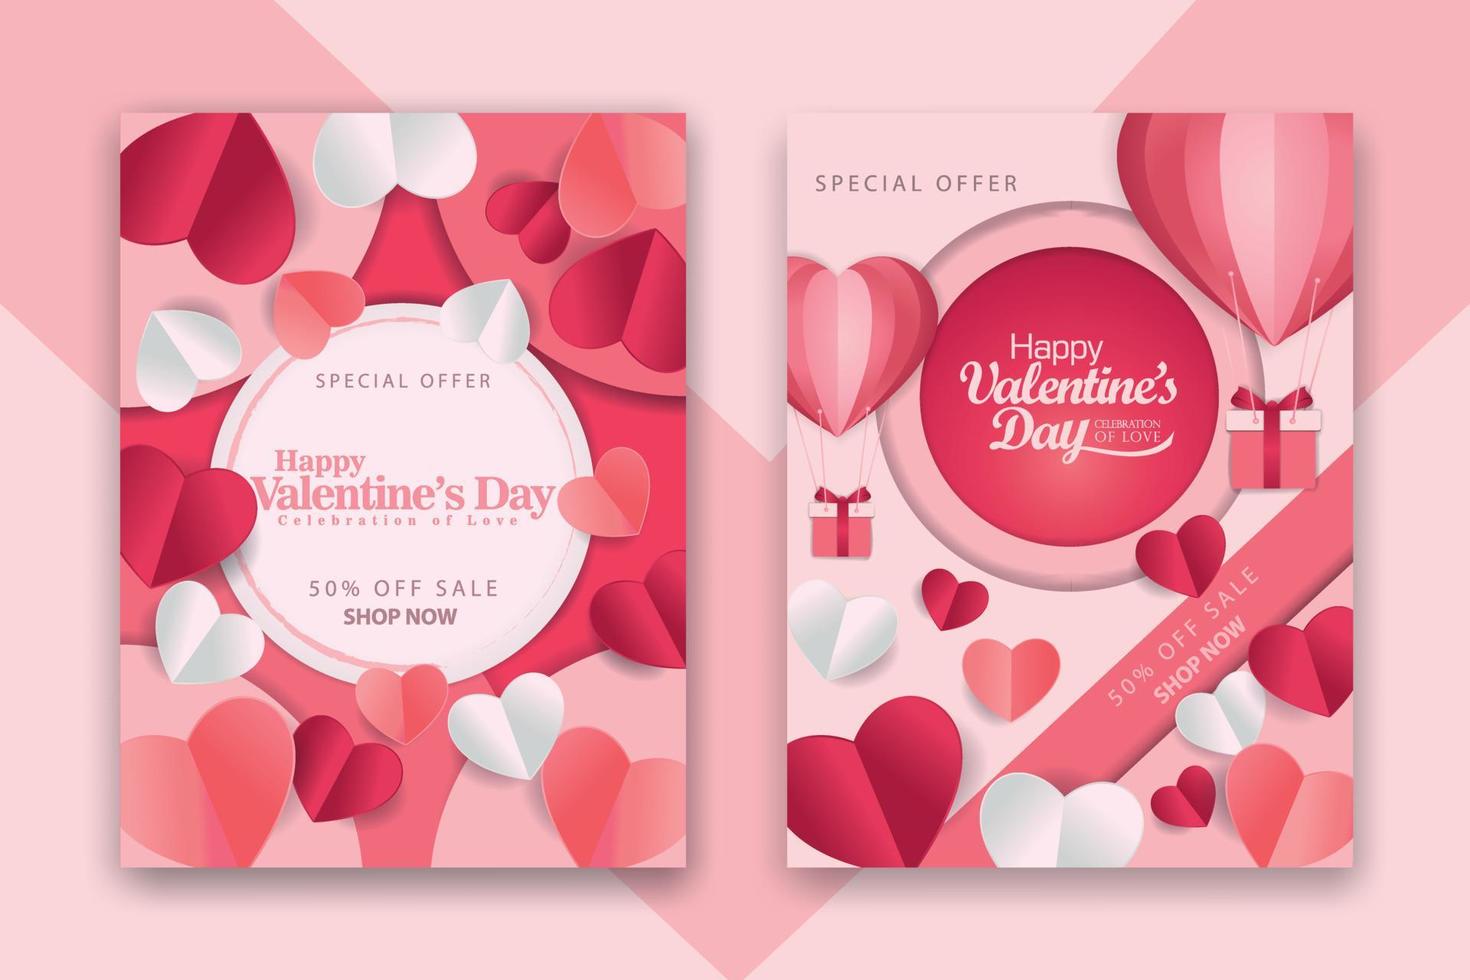 Valentijnsdag concept posters set met rode 3d en roze papieren harten en frame op geometrische achtergrond. schattige liefdesverkoopbanners of wenskaarten vector